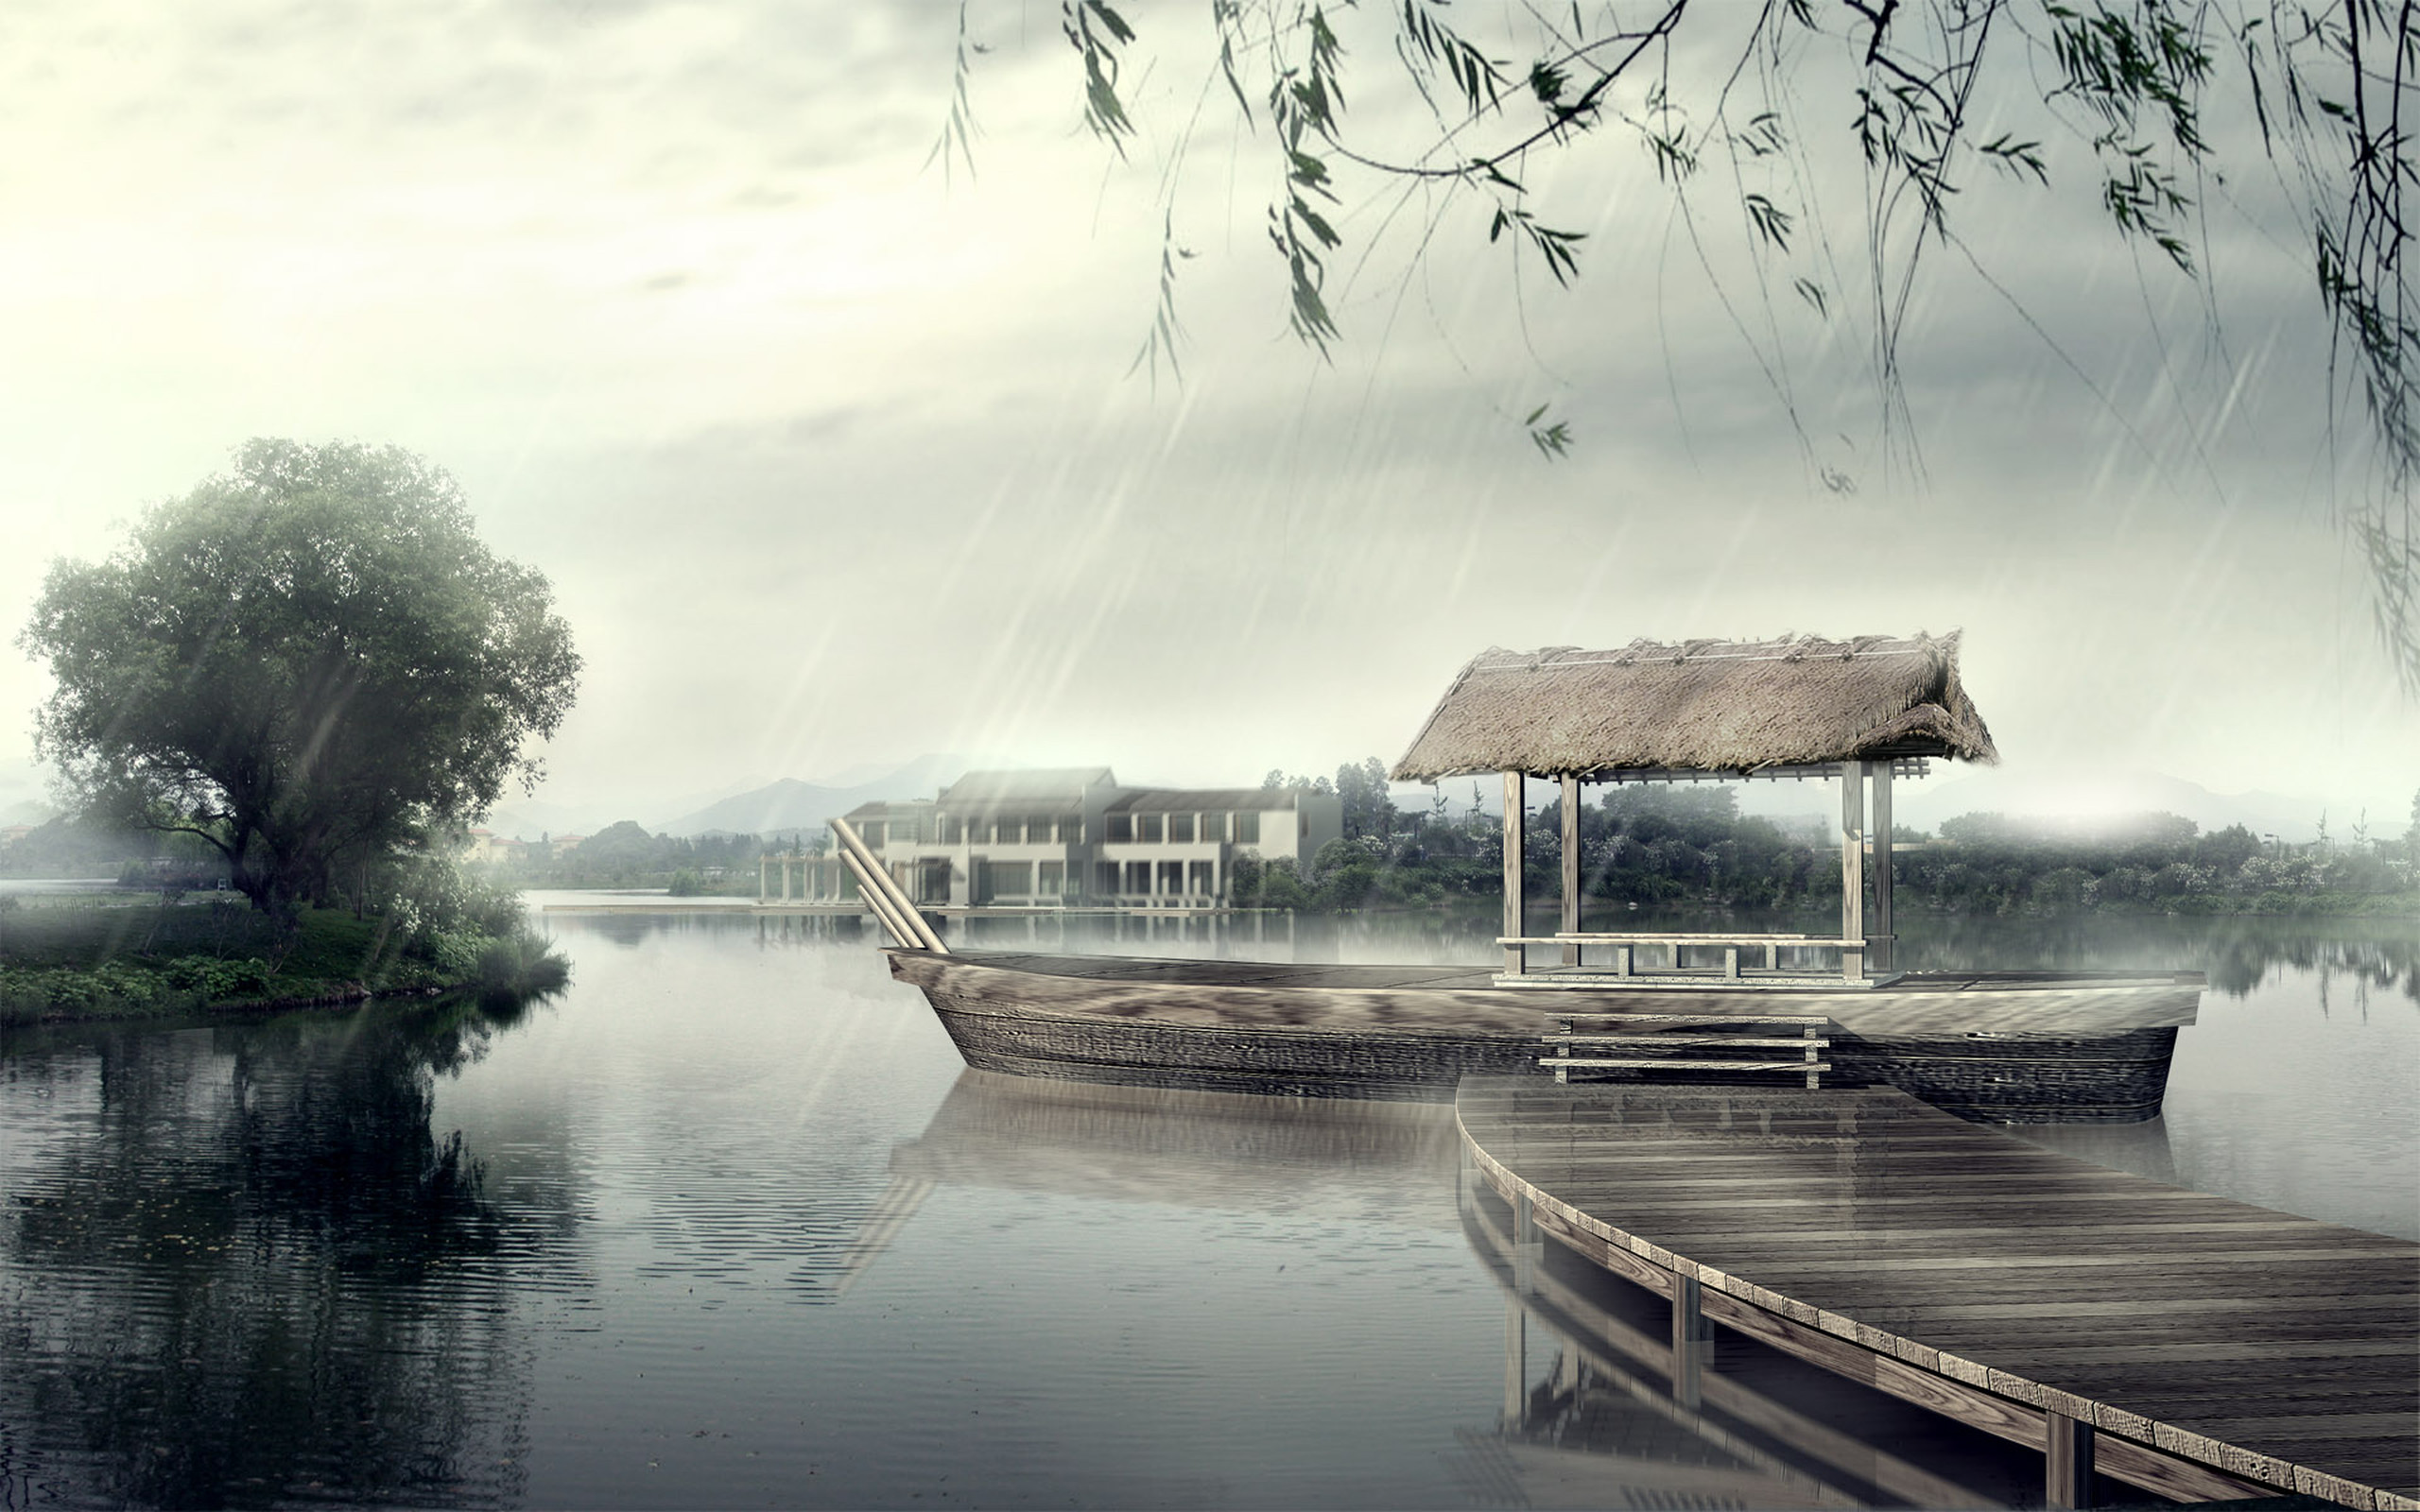 rain, photography, house, artistic, boat, lake